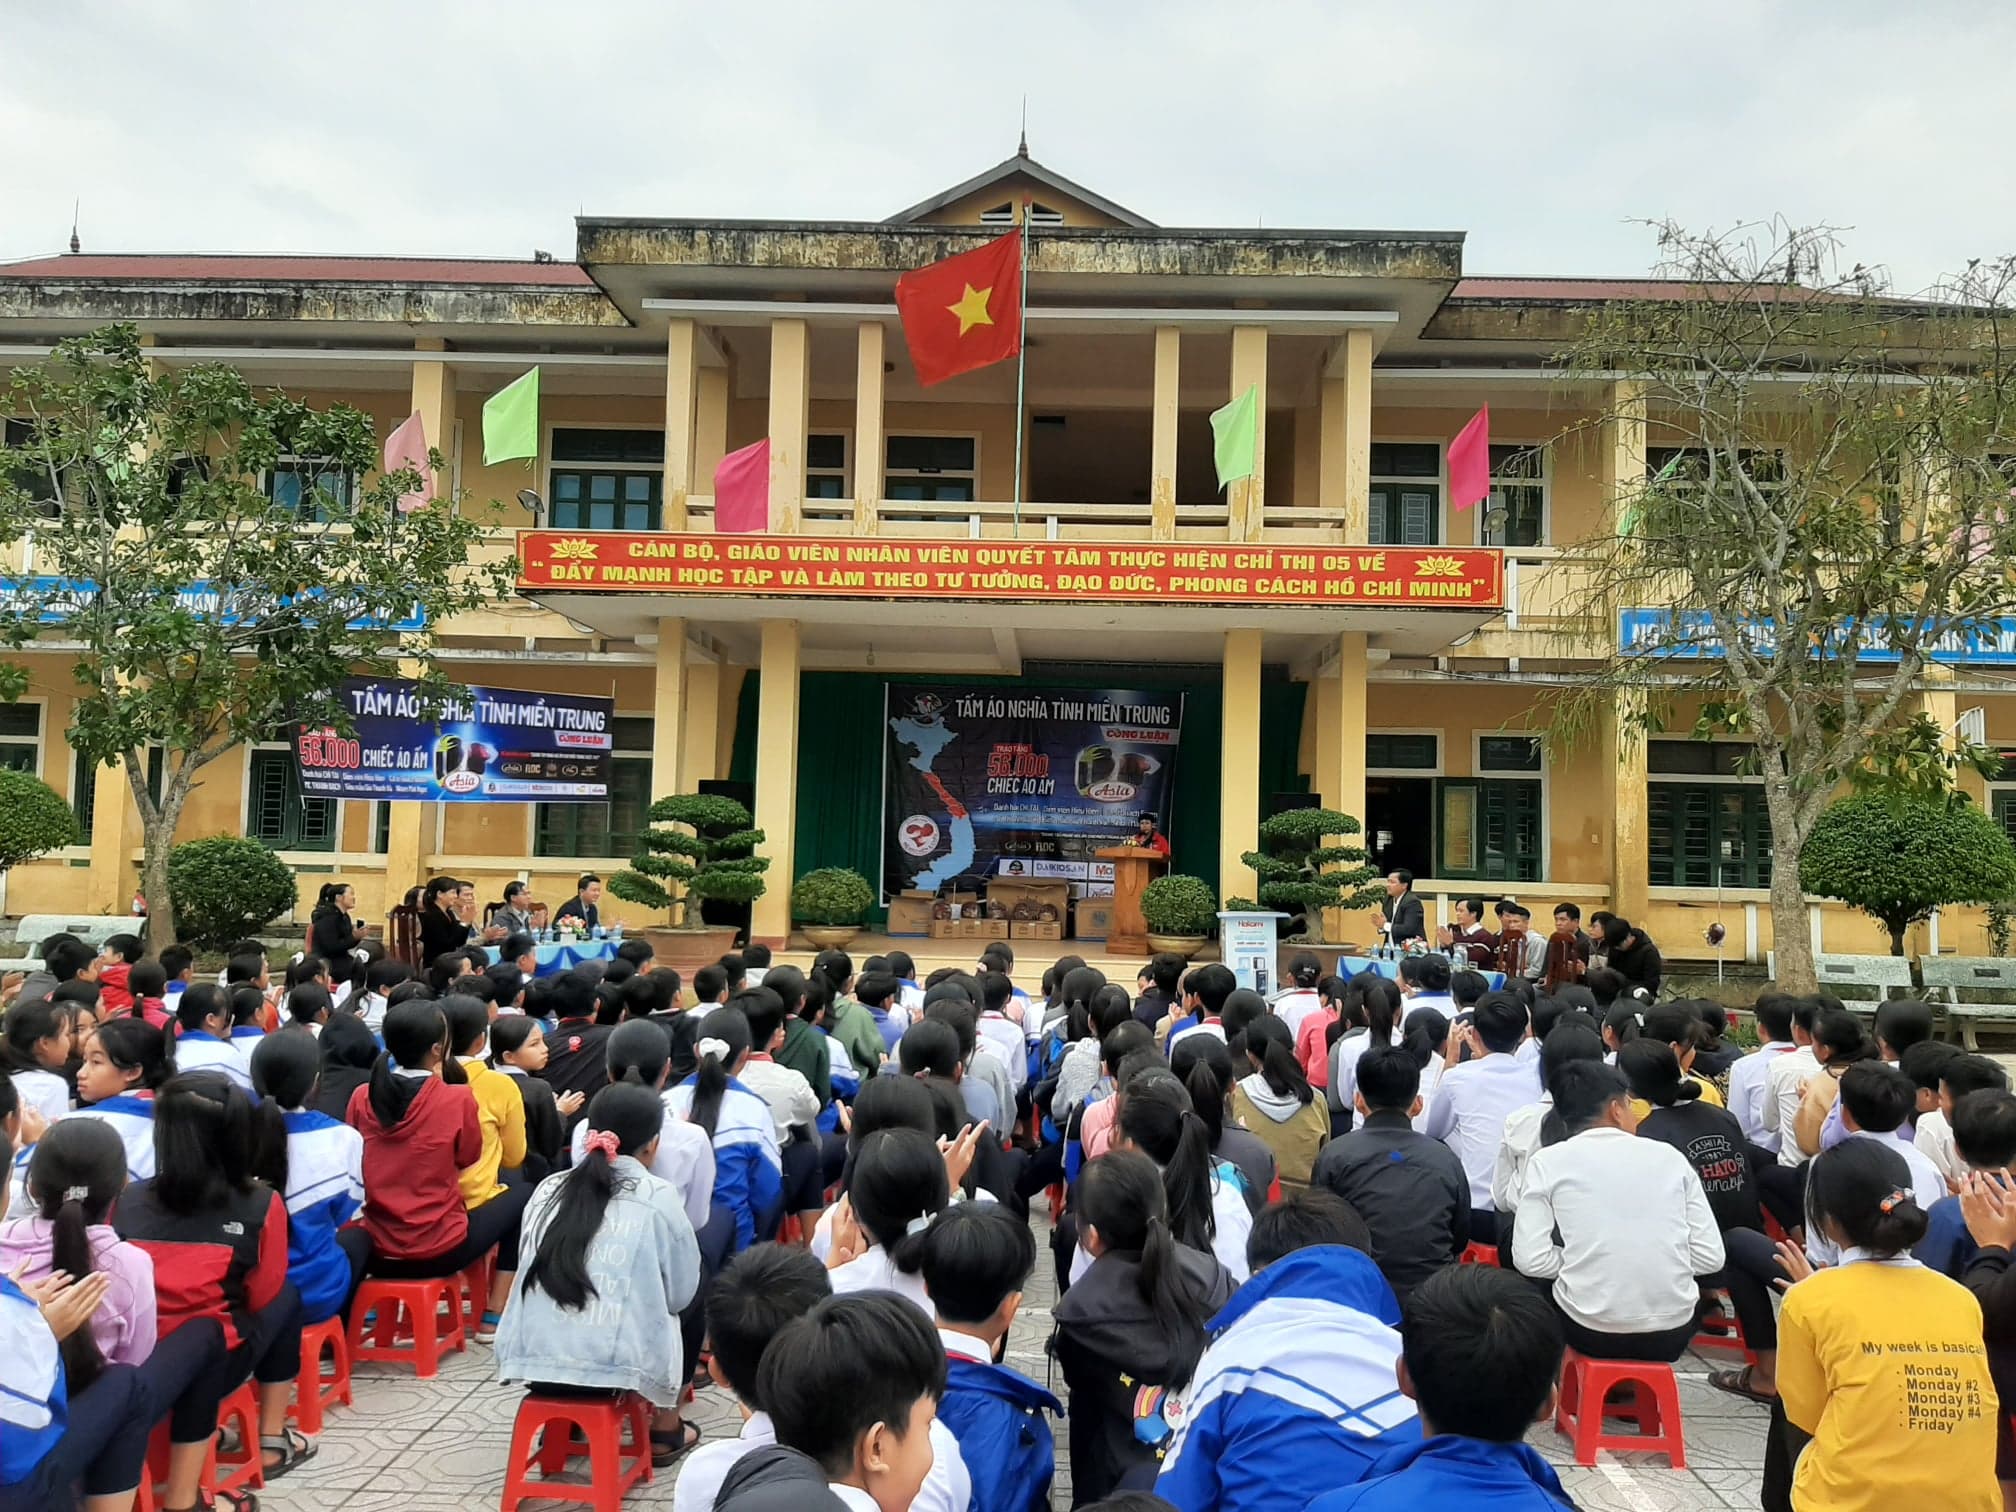 Chương trình “Tấm áo nghĩa tình miền Trung” thực hiện tại 05 trường học tại huyện Hải Lăng, tỉnh Quảng Trị.